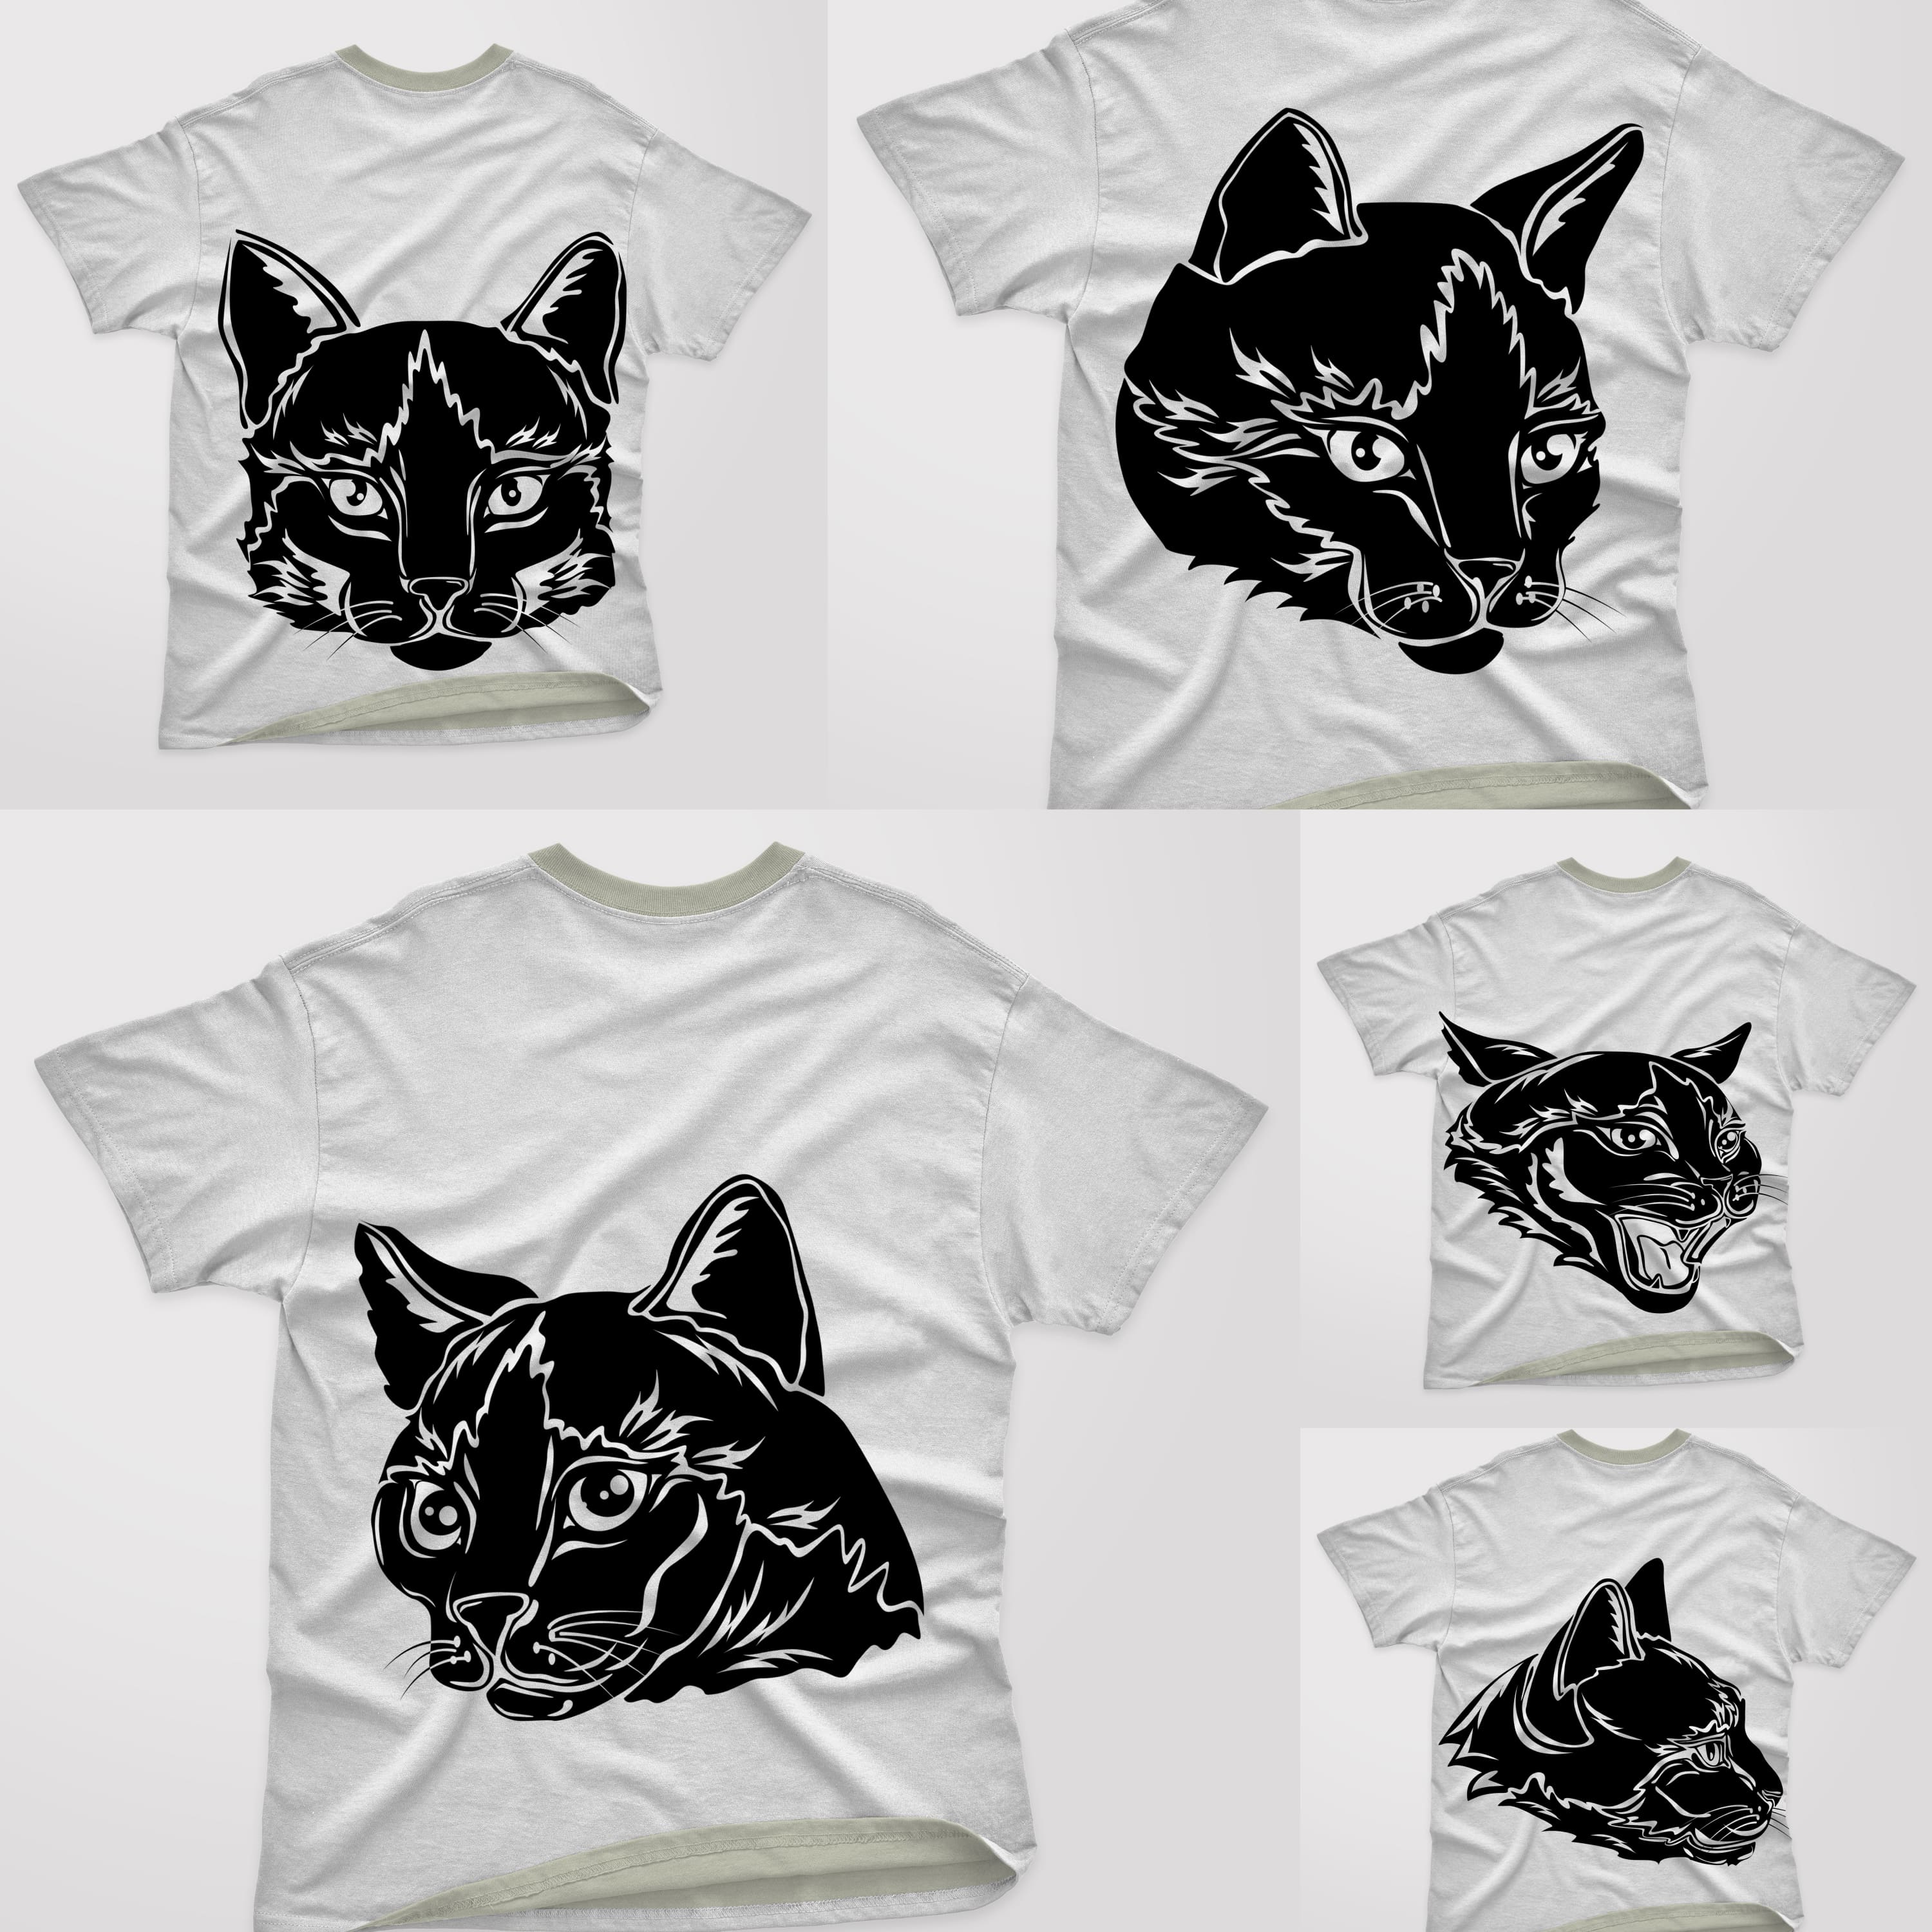 Silhouette Cat Face T-shirt Designs Bundle Cover.